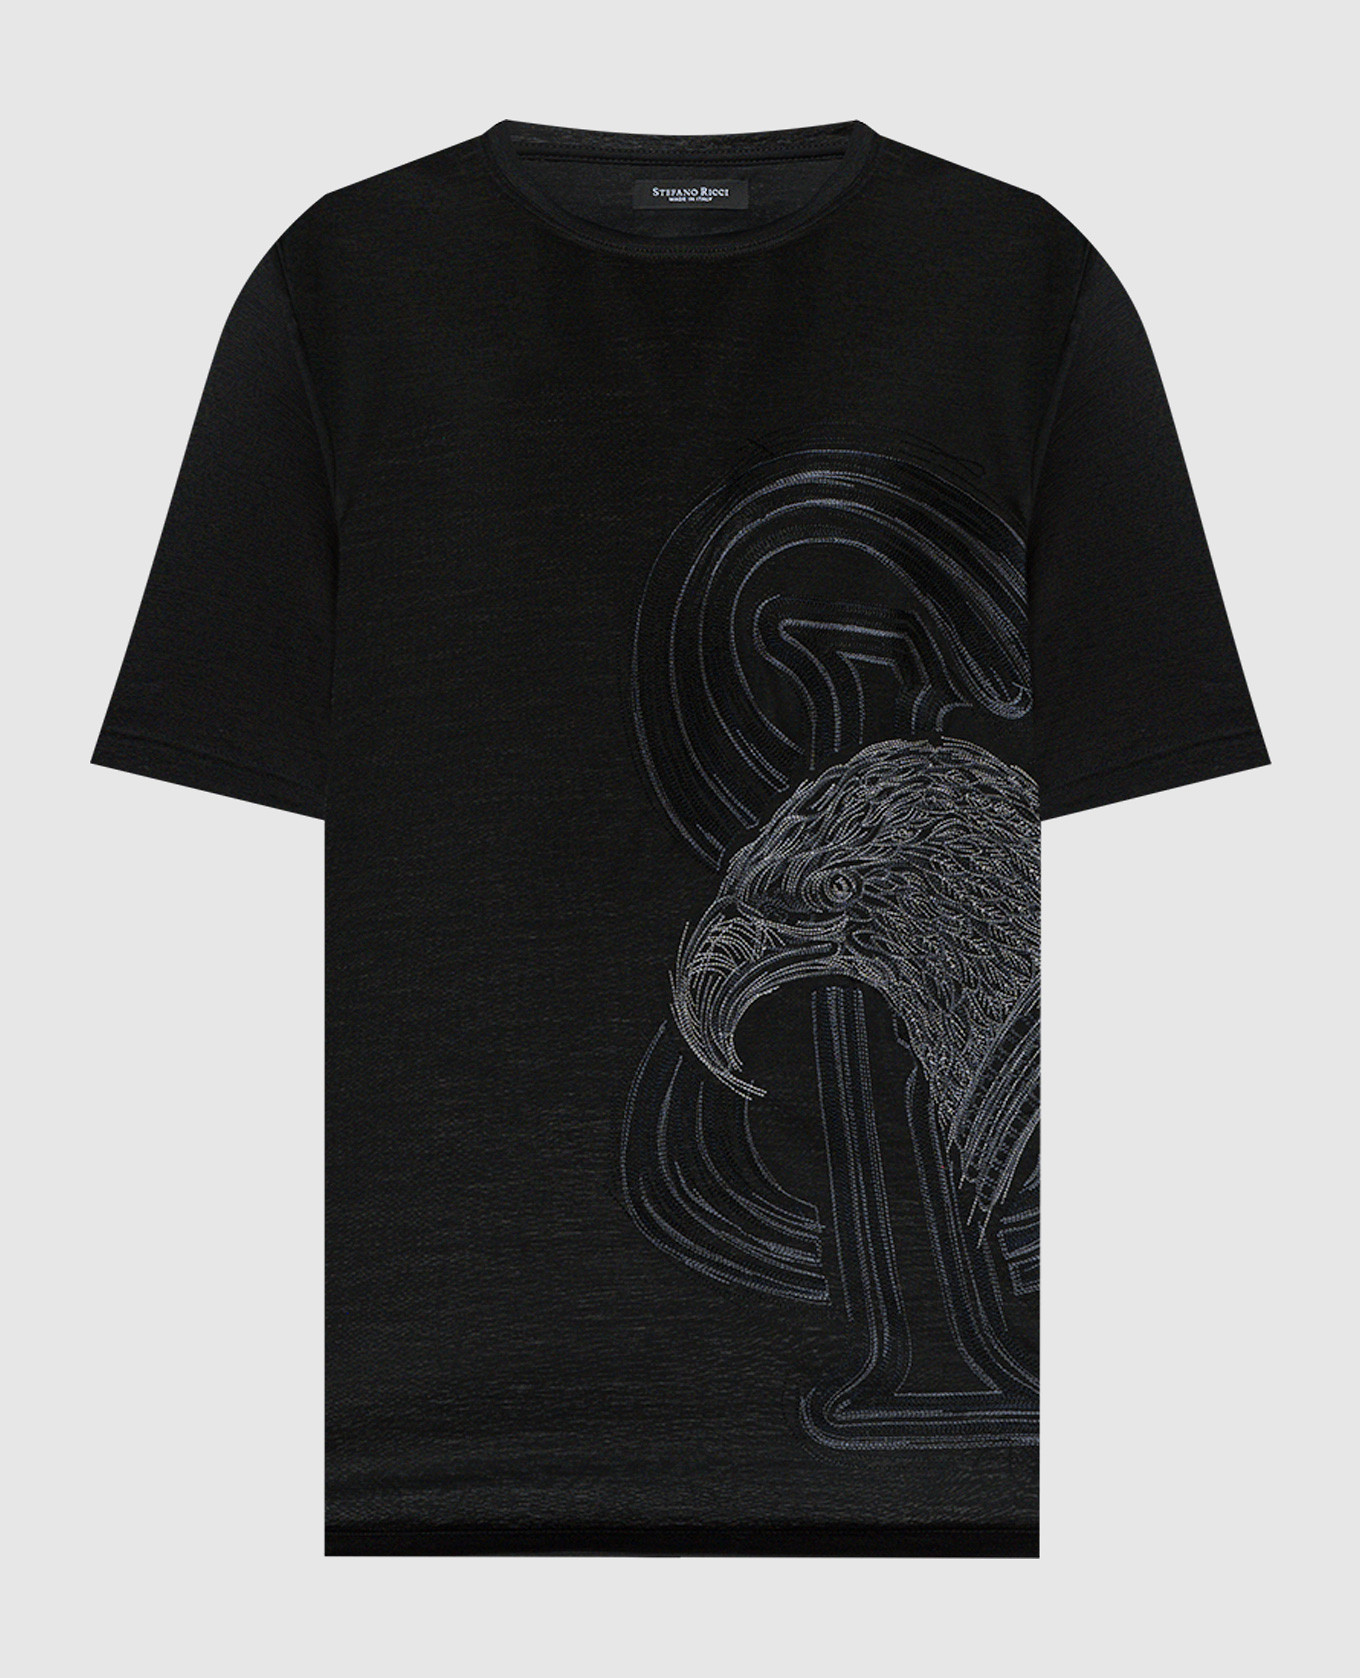 Черная футболка из шерсти с вышивкой логотипа монограммы.